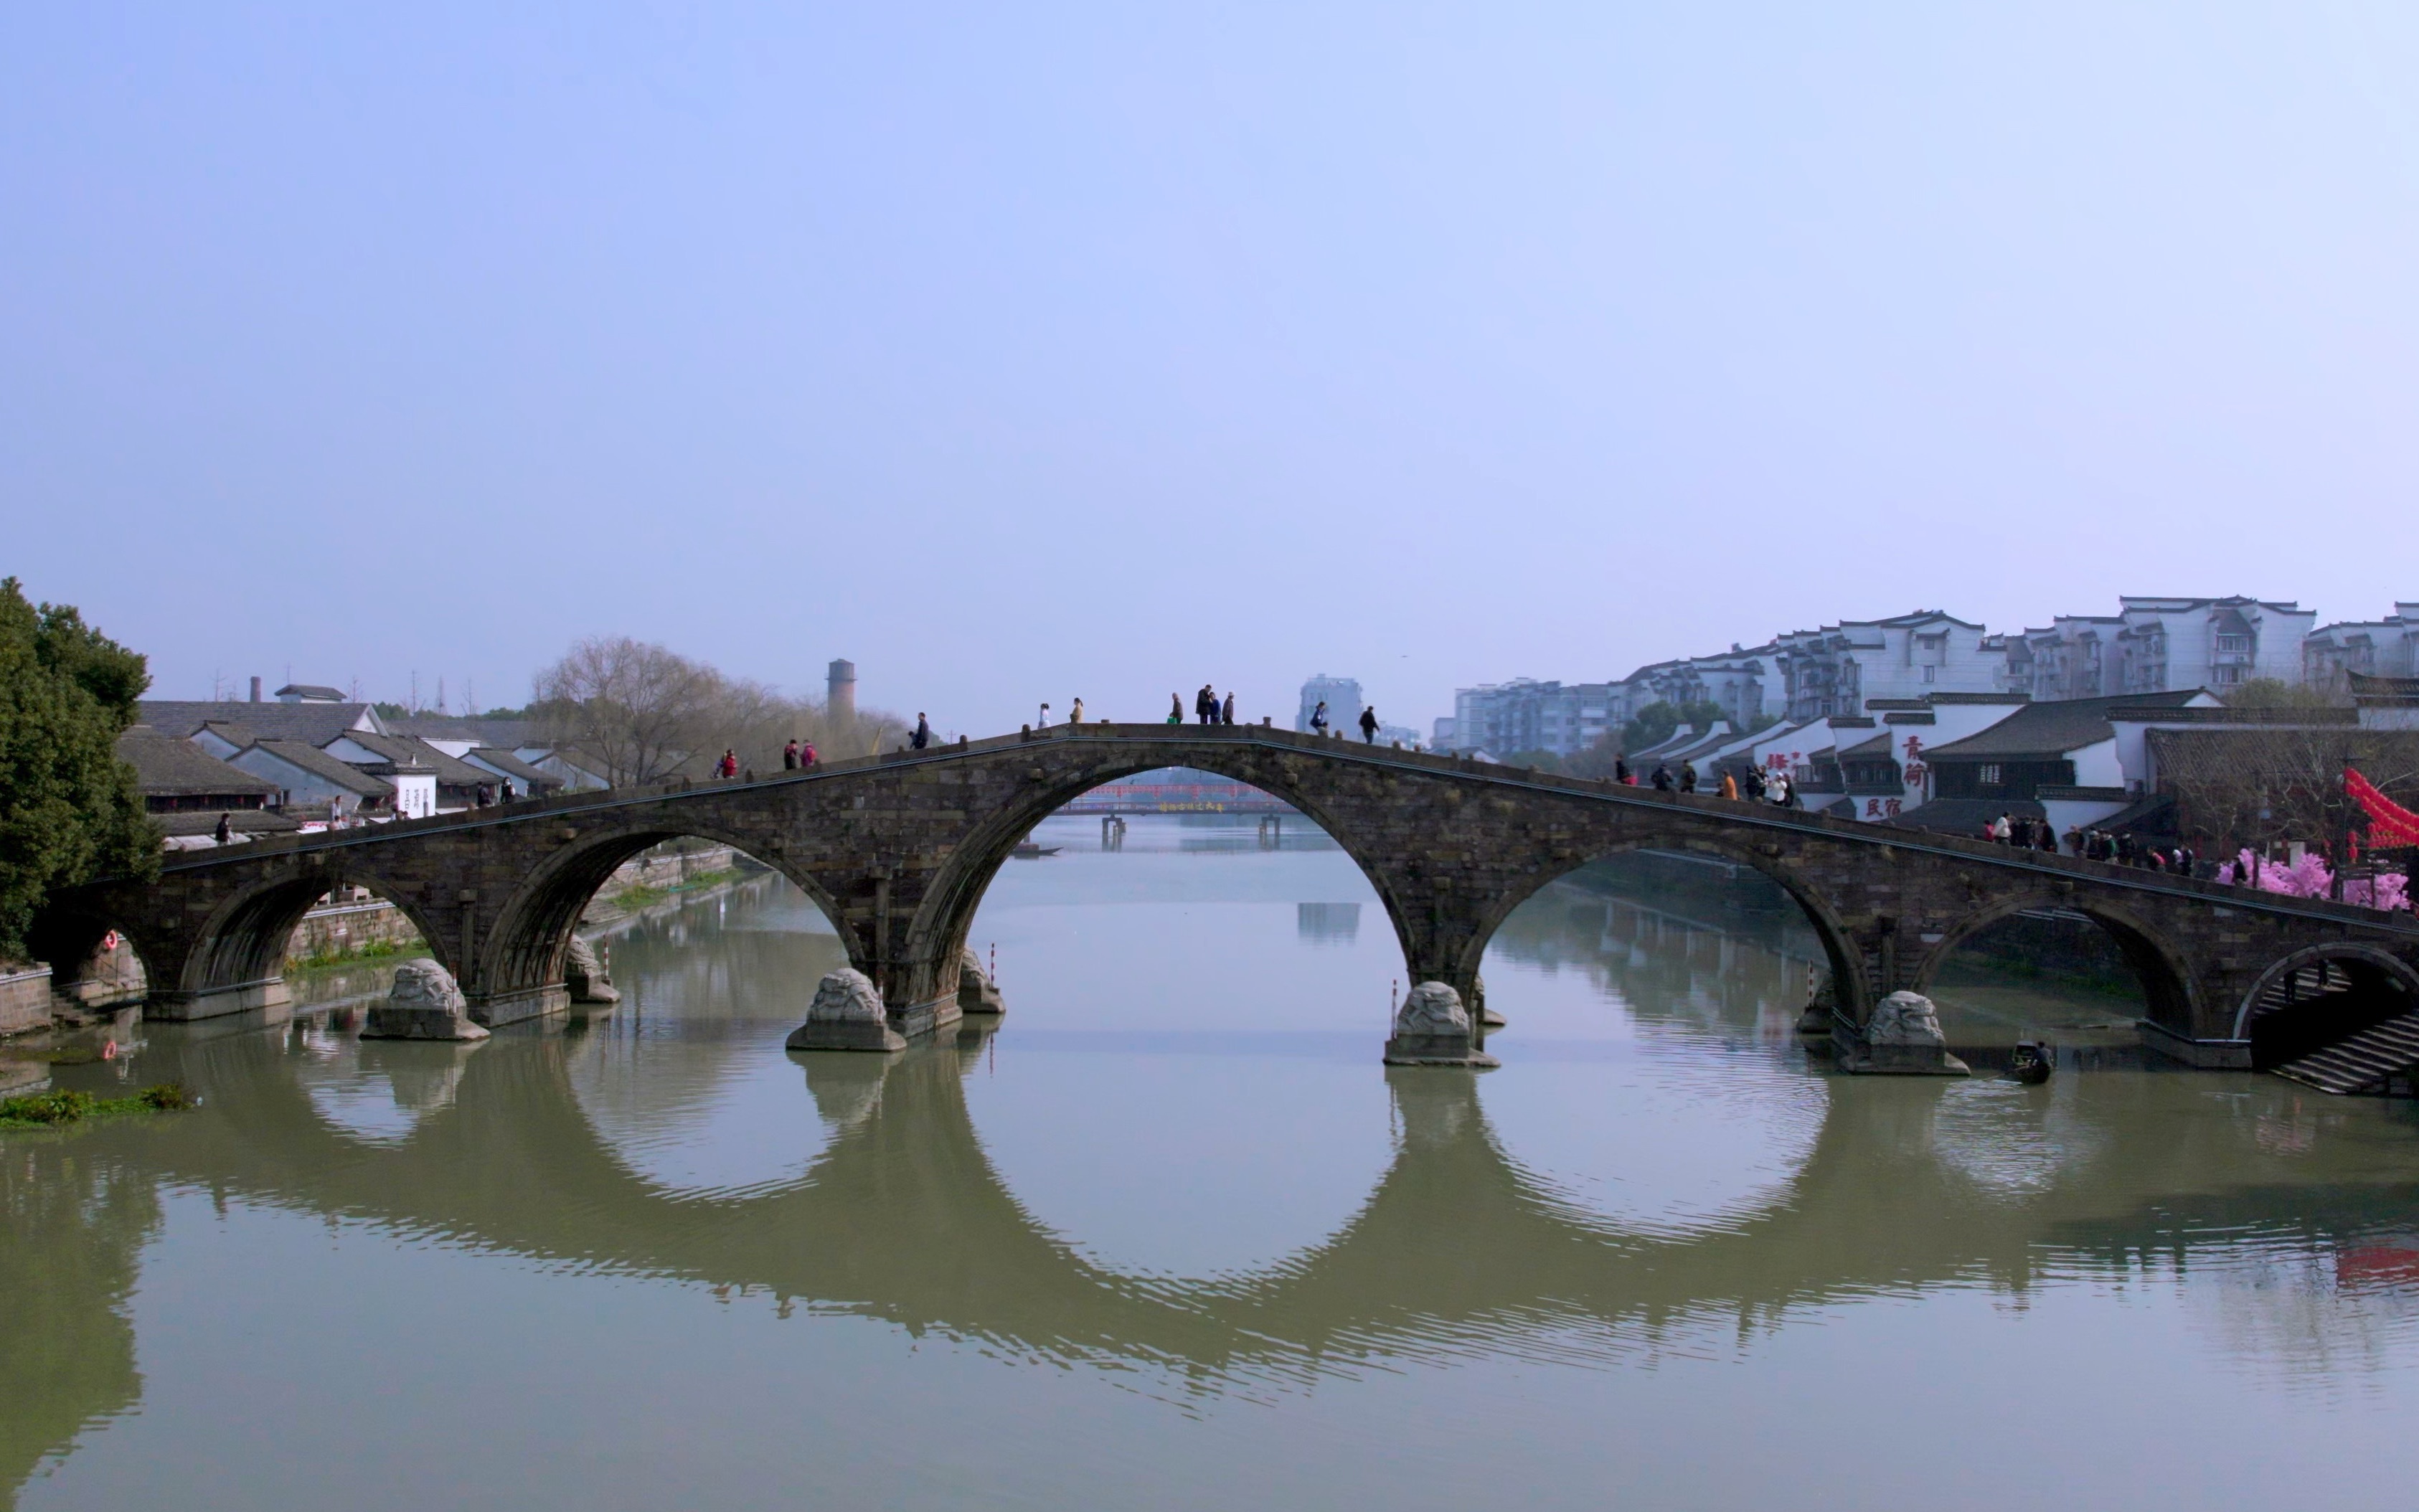 塘栖古桥—广济桥图片